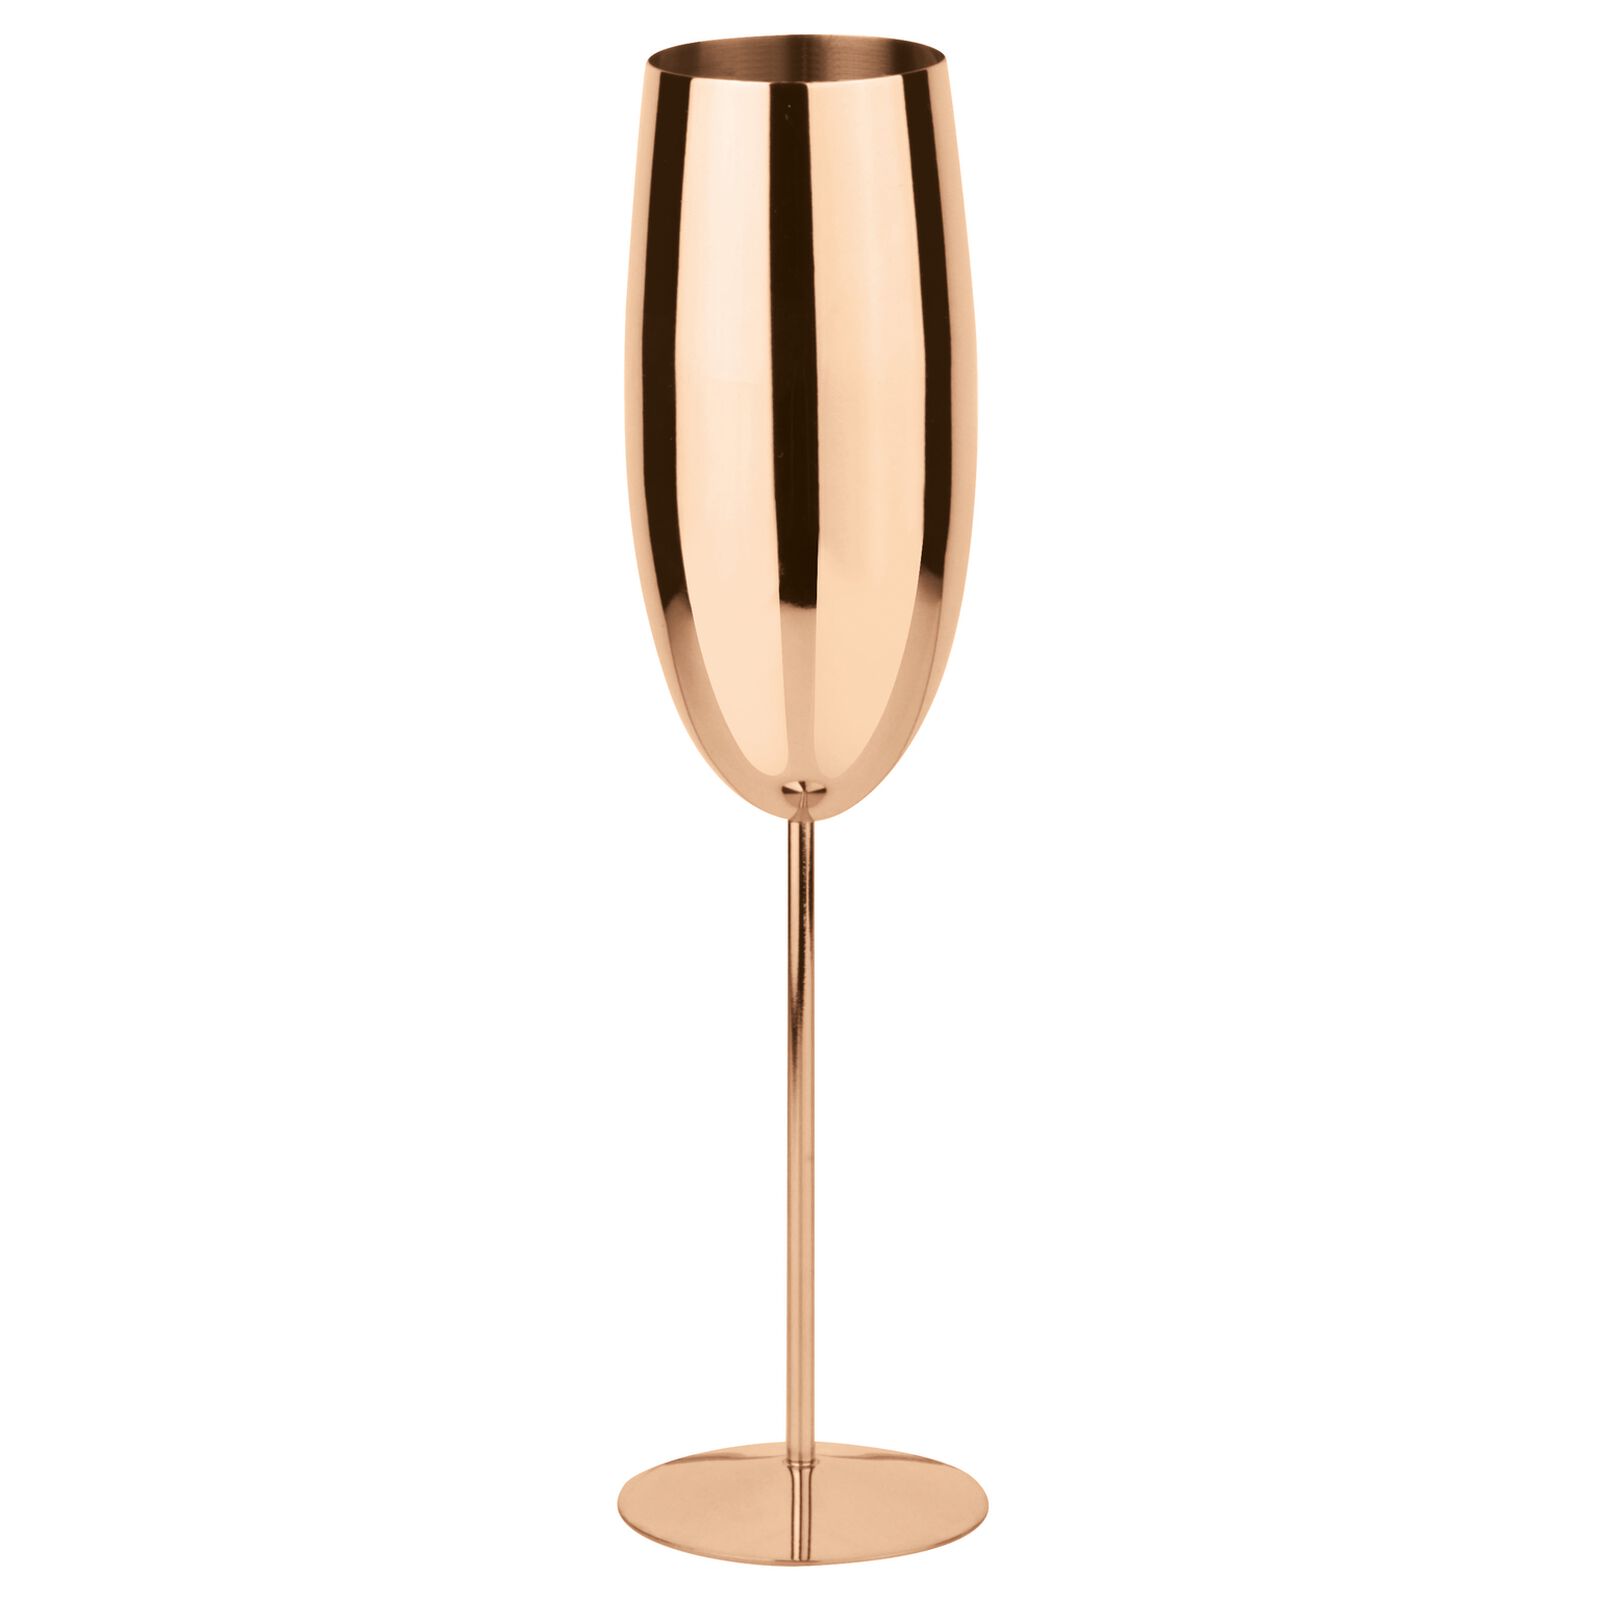 Champagner (Edelstahl), Paderno, Bar Collection, Kupfer - 270ml